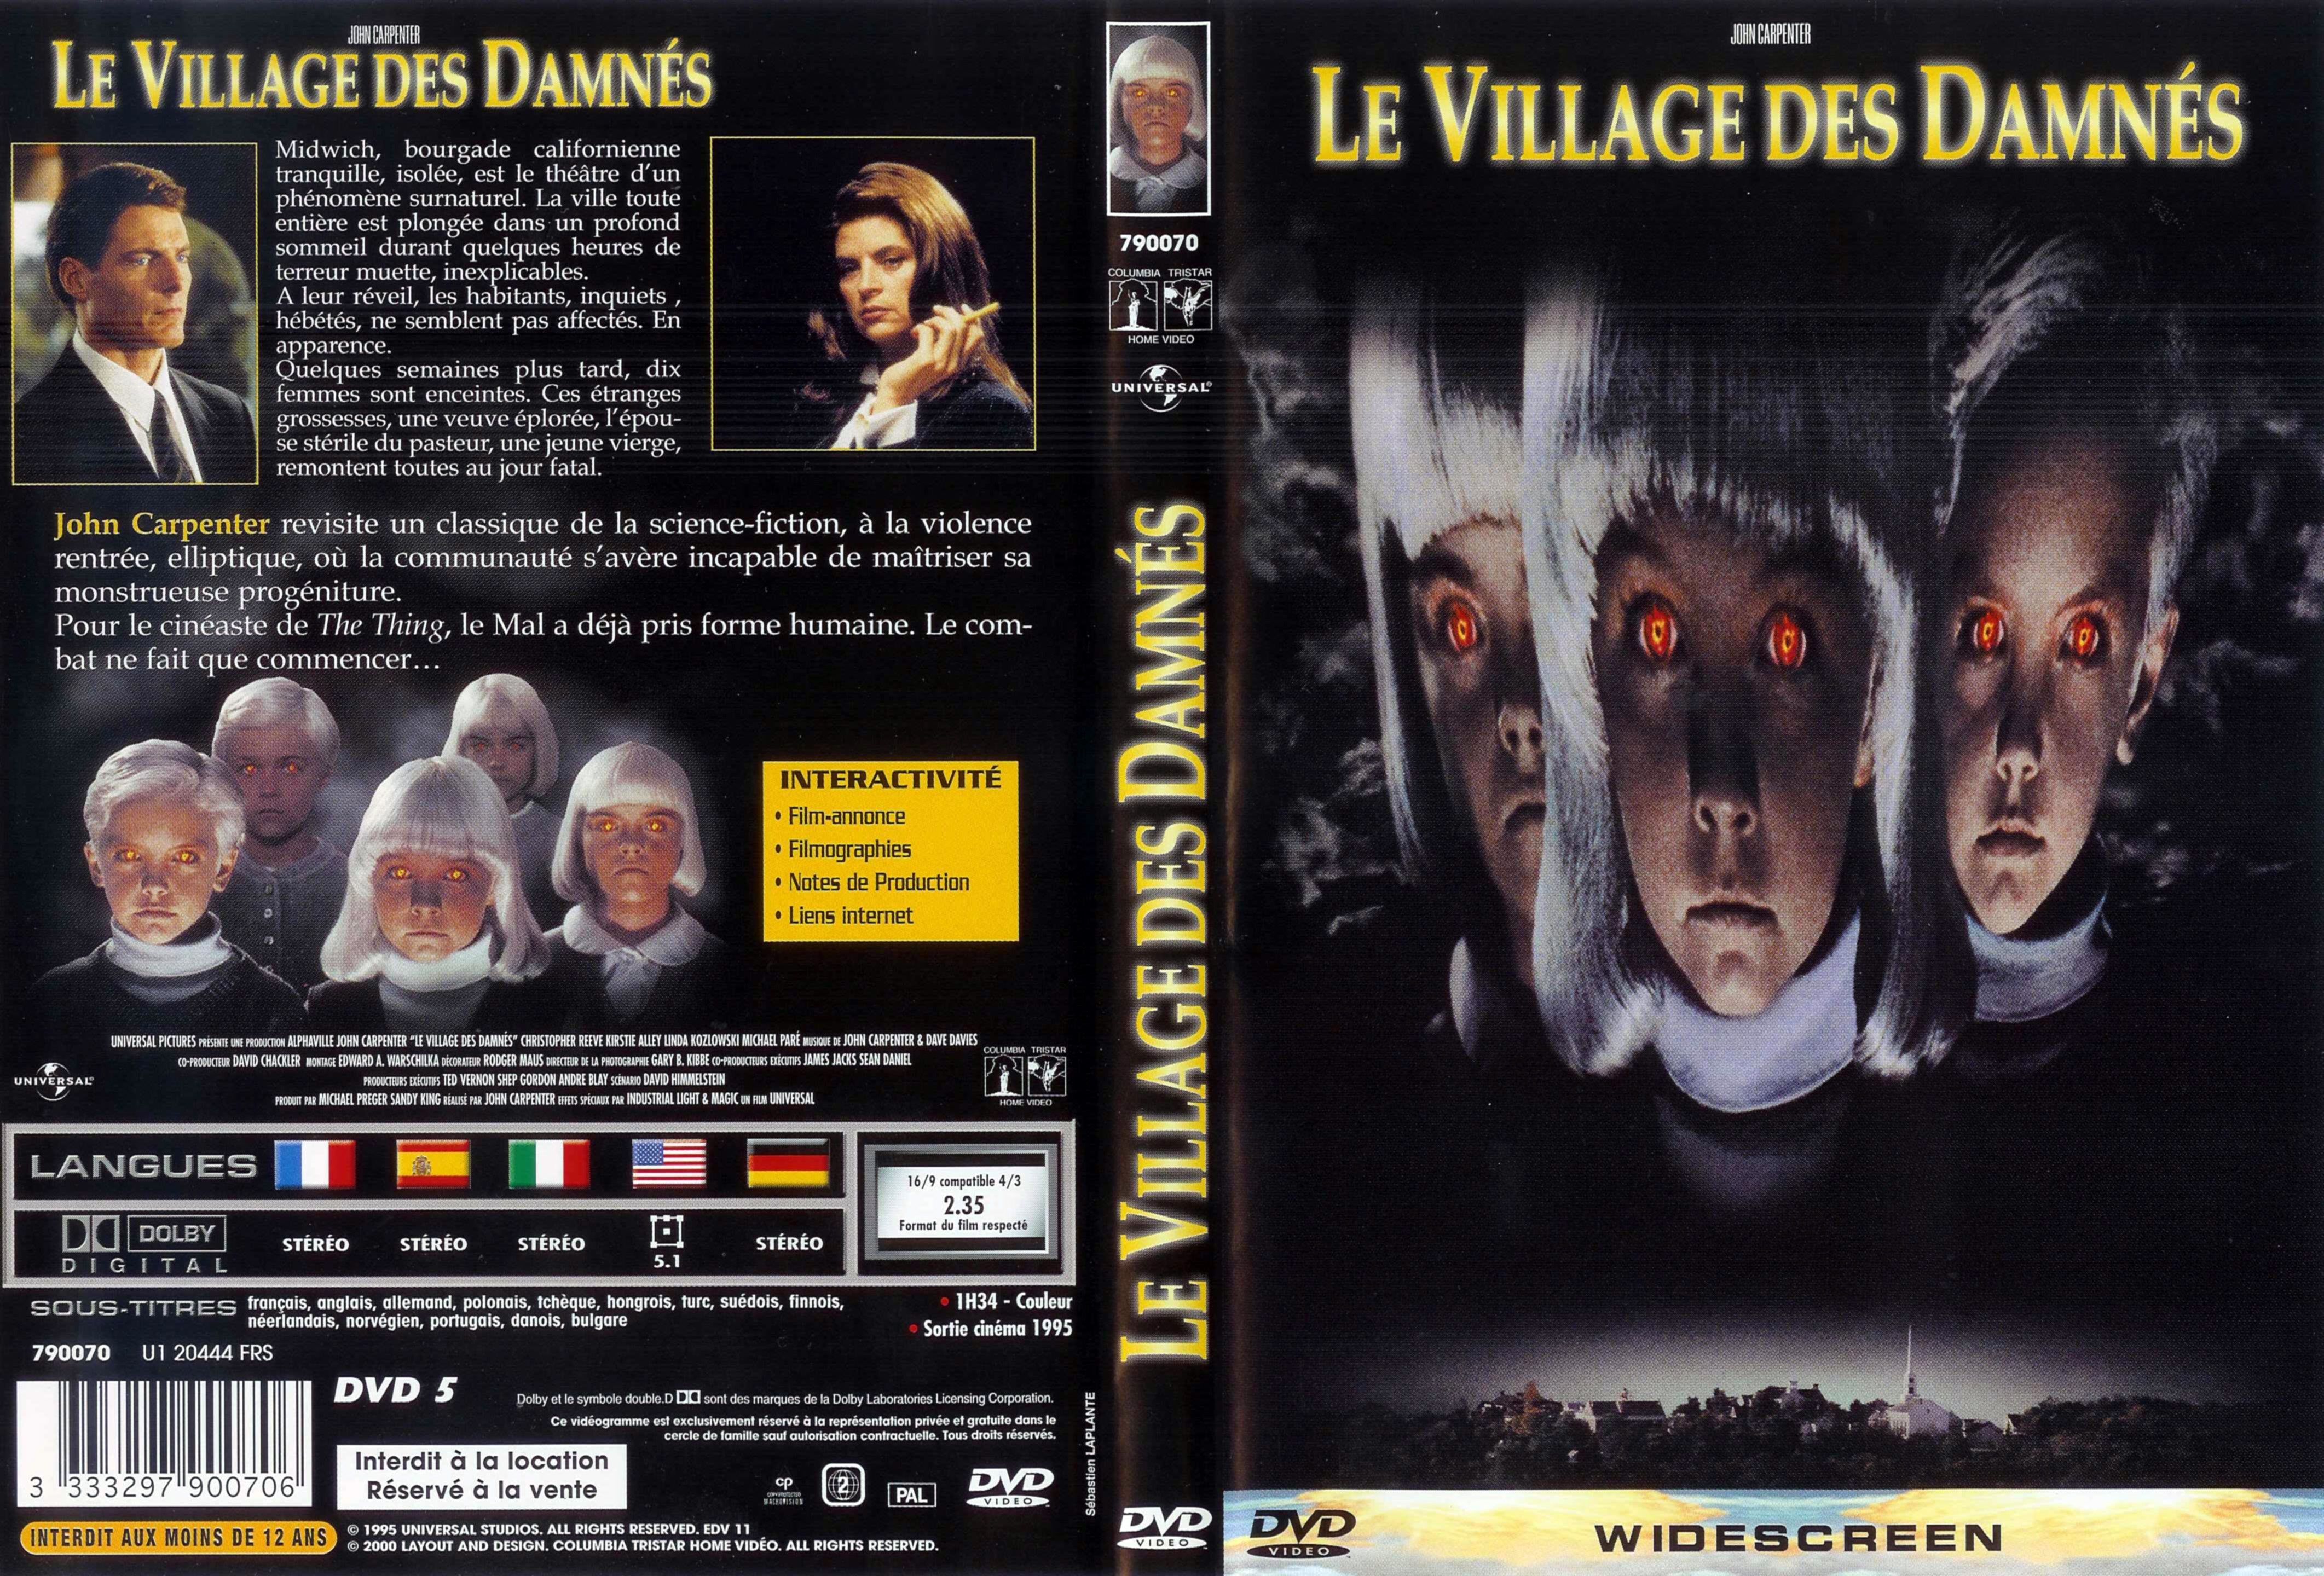 Jaquette DVD Le village des damnes v2